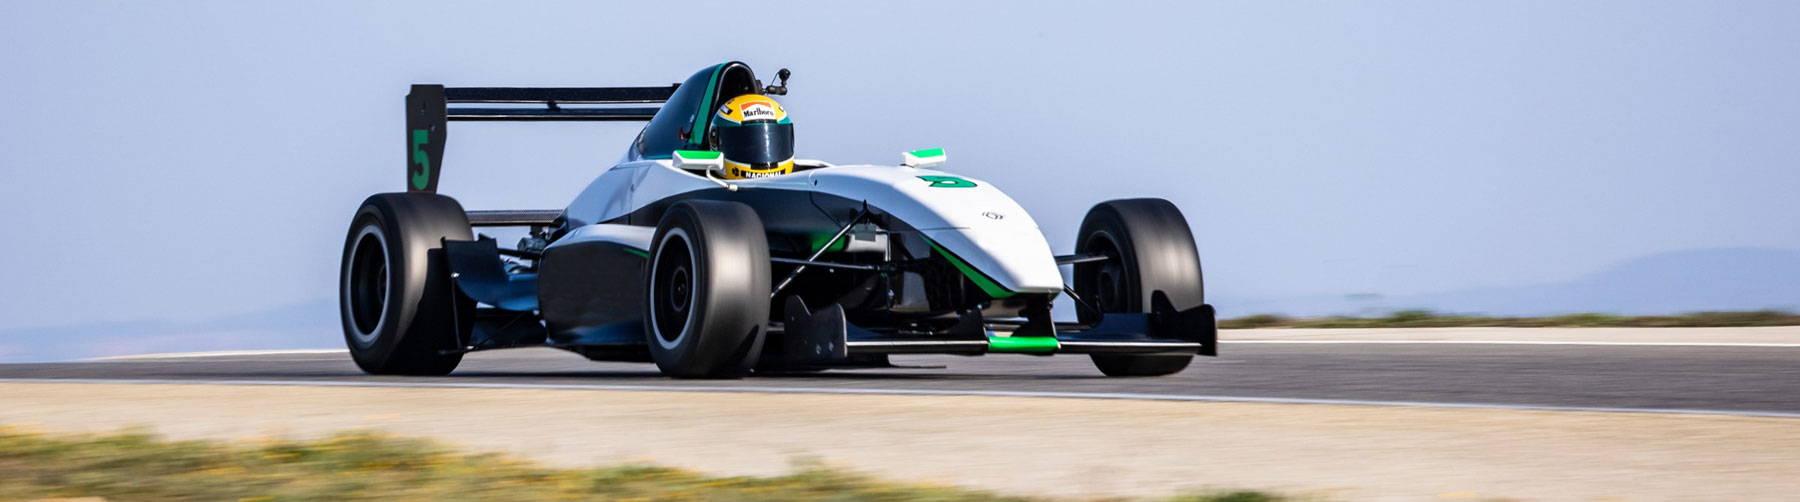 Formule 4 Tatuus sur circuit